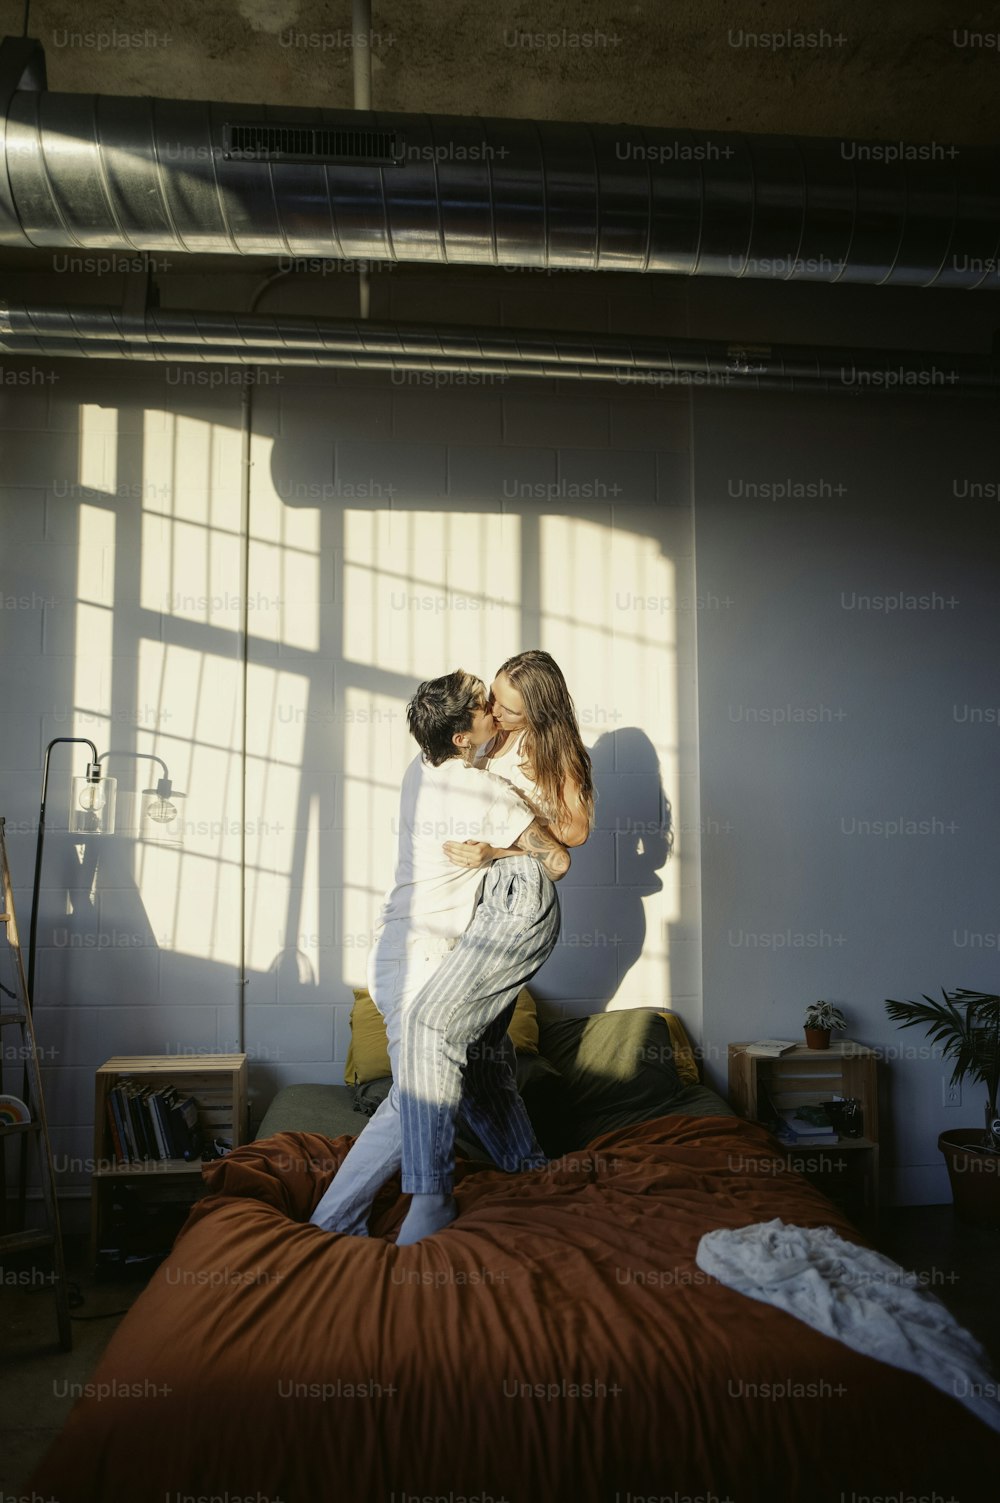 Ein Mann und eine Frau, die auf einem Bett stehen